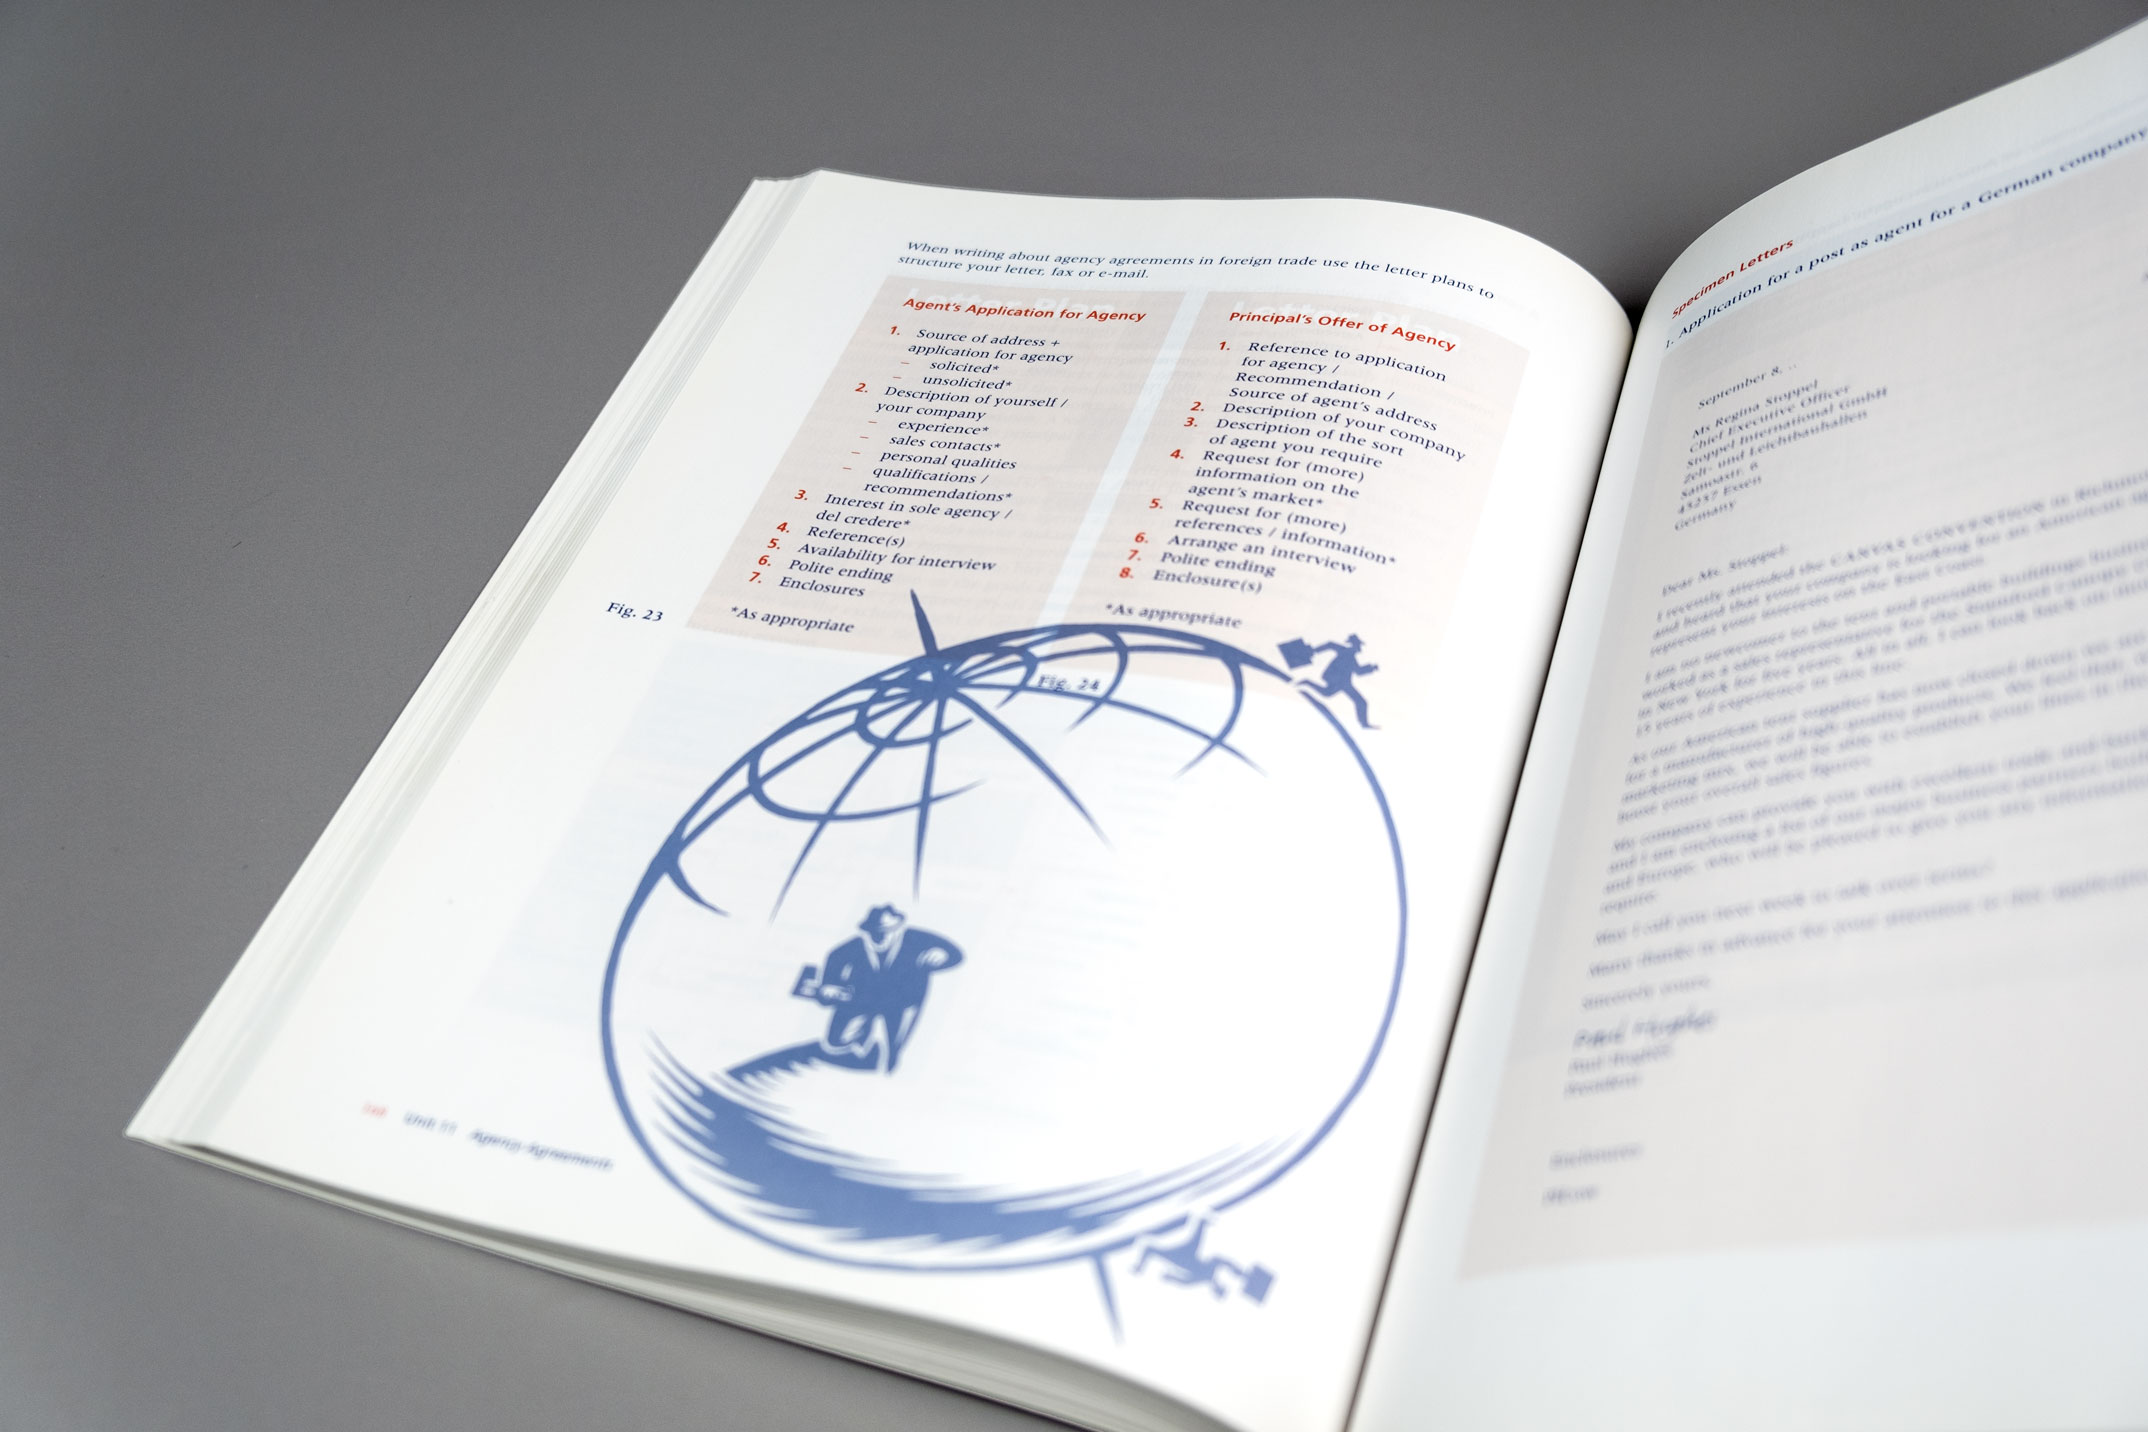 Didaktische Buchgestaltung, Kapitelanfang mit Illustration einer Weltkugel, Lehrwerk Communication for Business, Hueber Verlag München